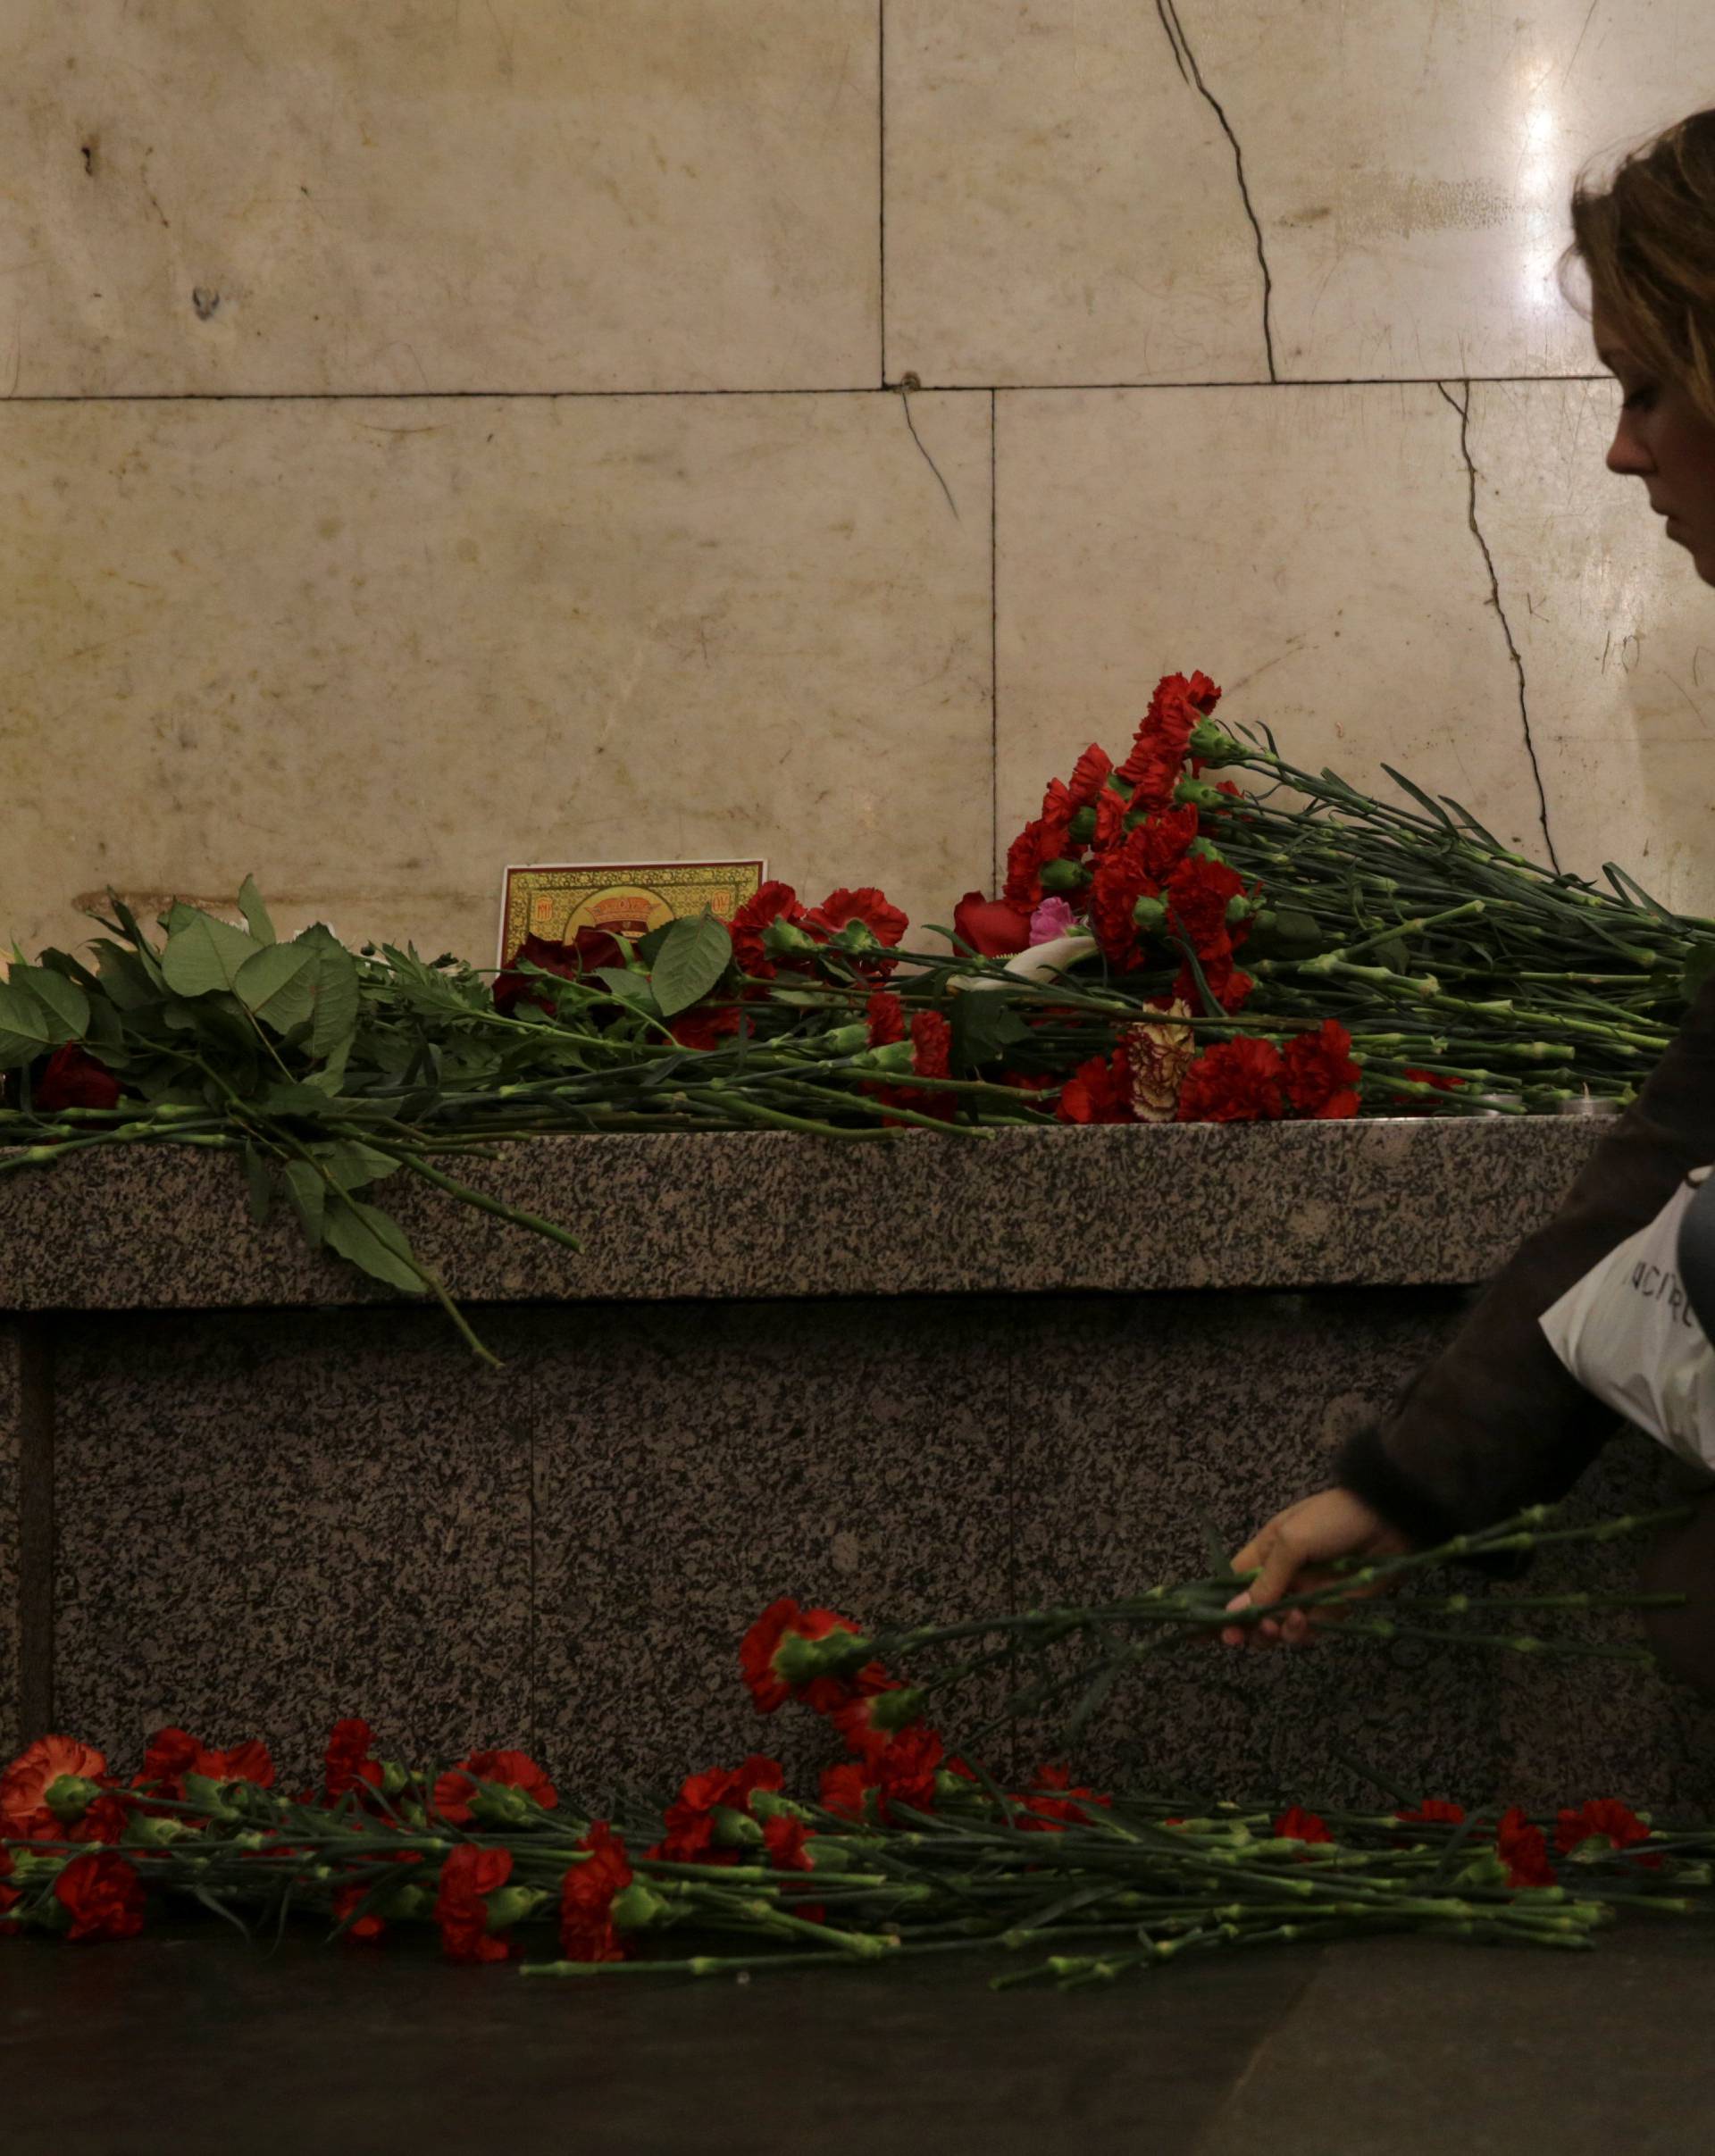 A woman lays flowers in memory of victims of a blast in St.Petersburg metro, at Tekhnologicheskiy institut metro station in St. Petersburg